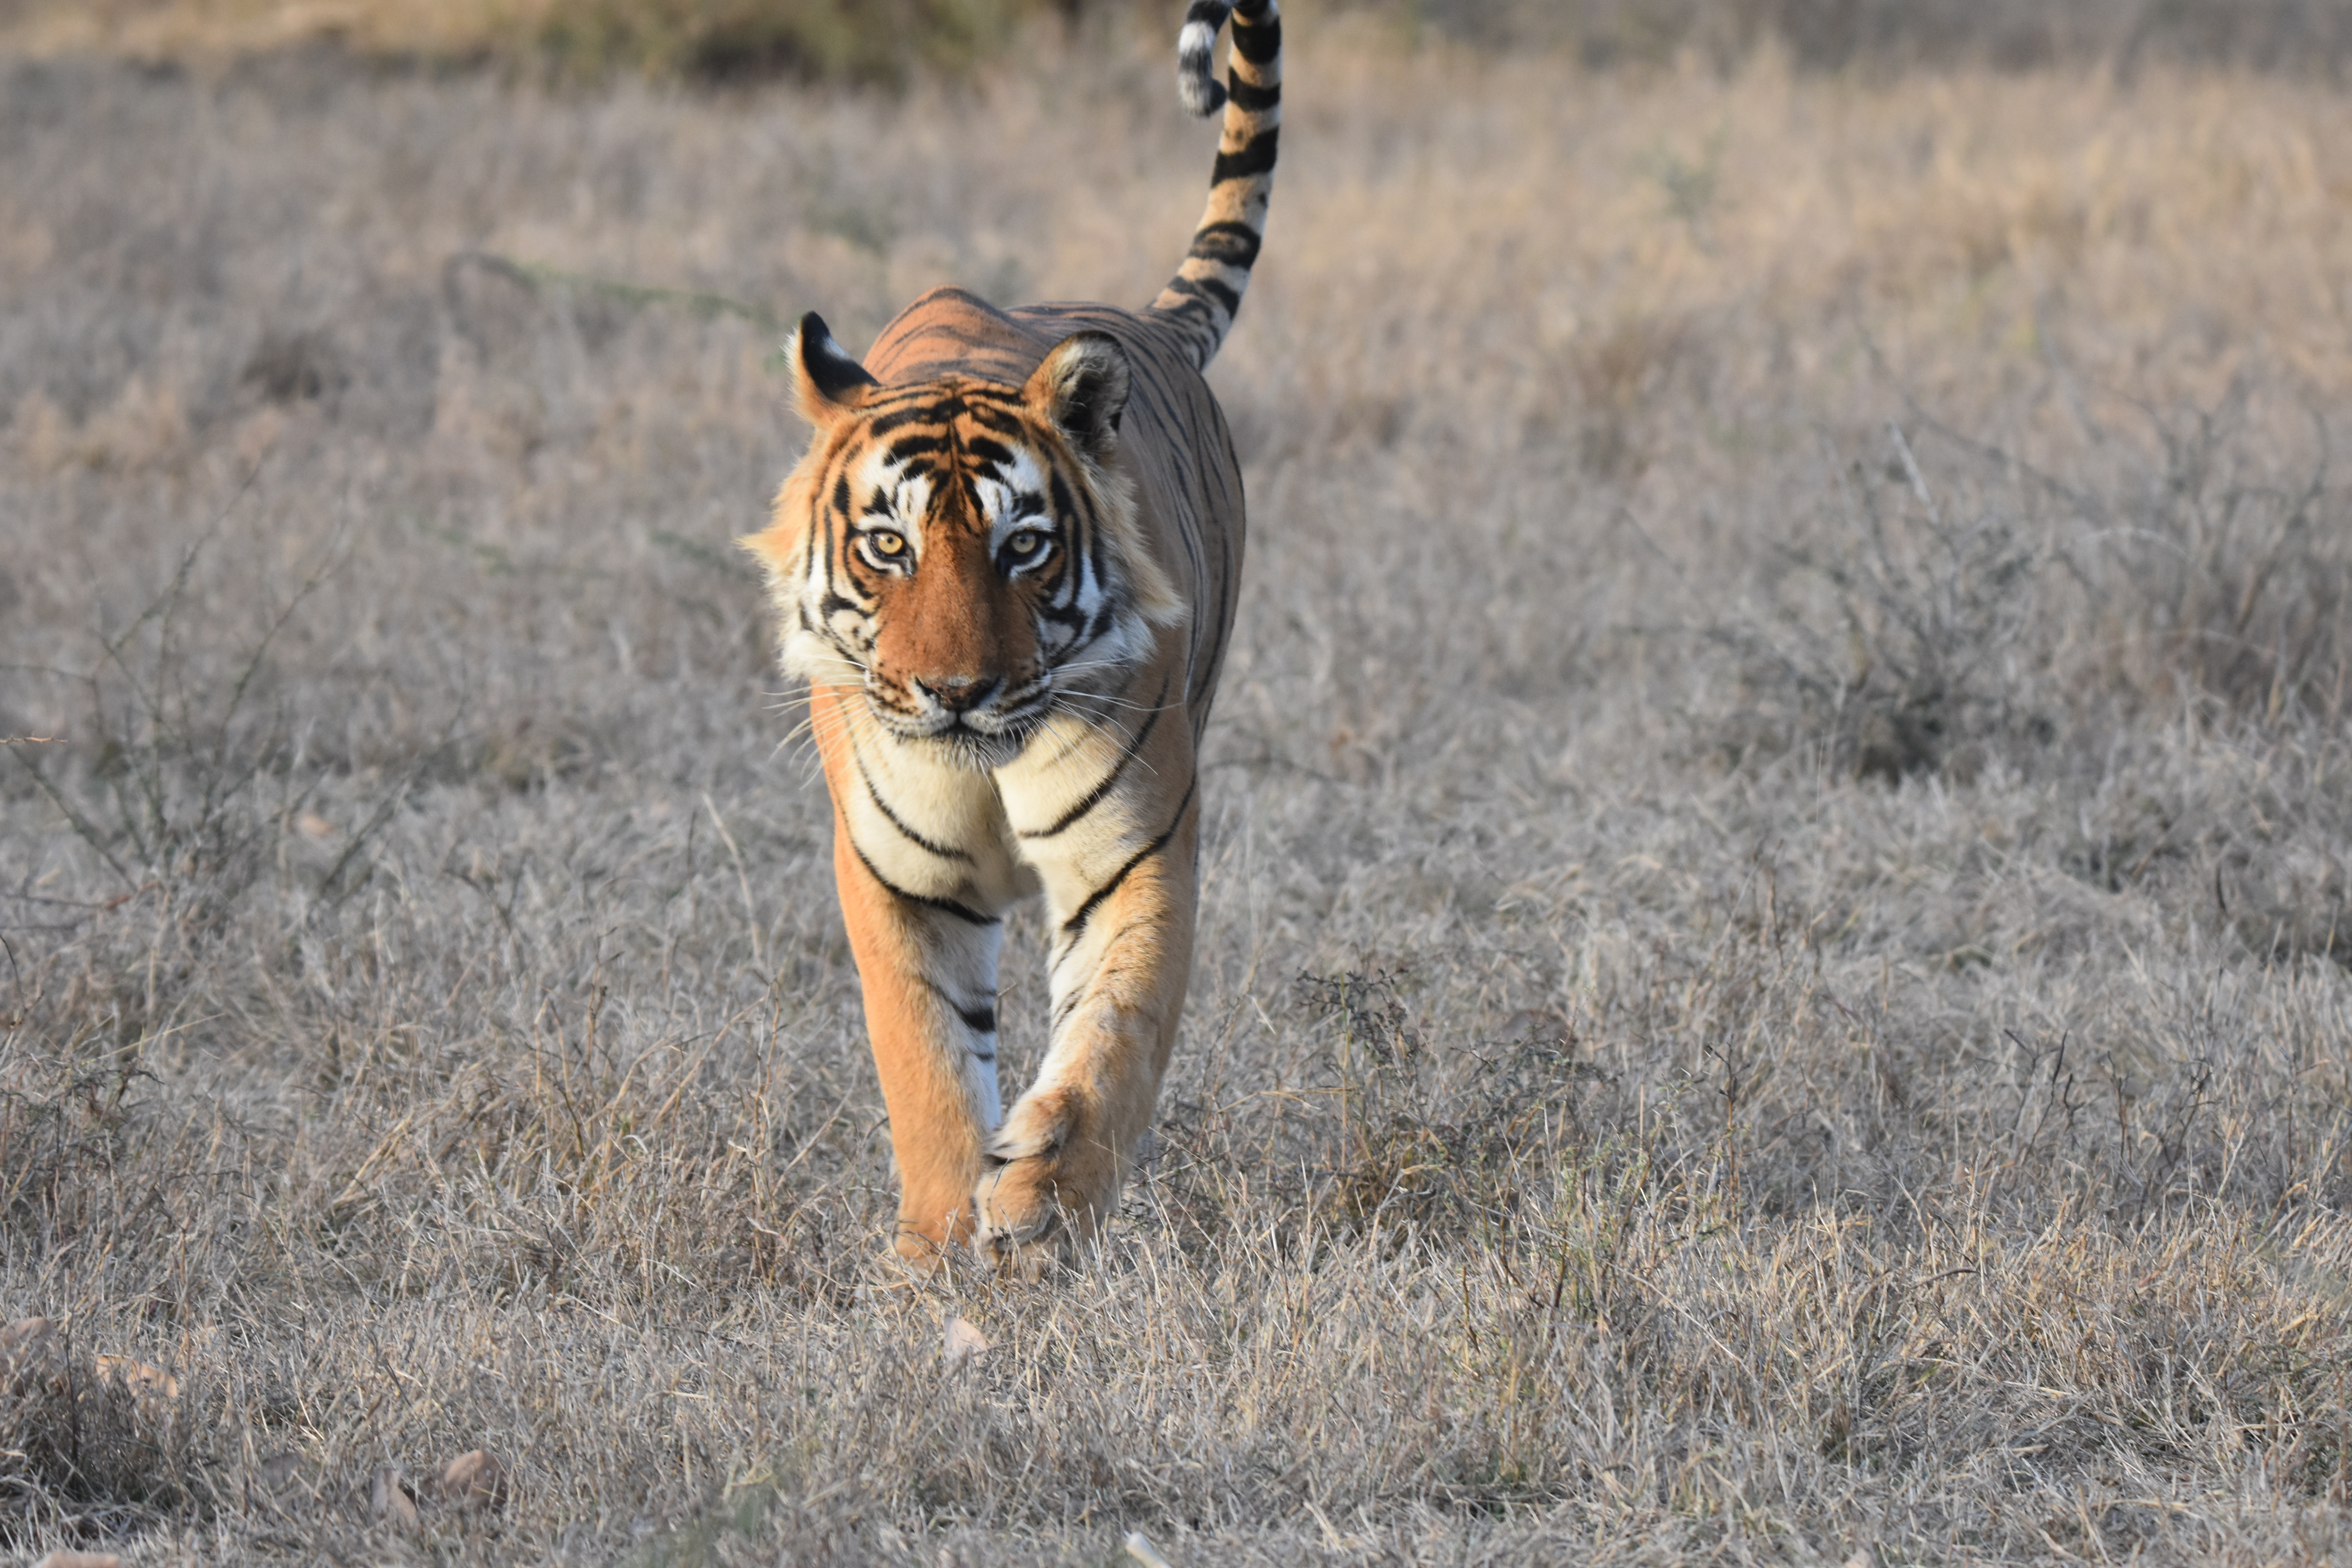 Tiger at Bandipur National Park